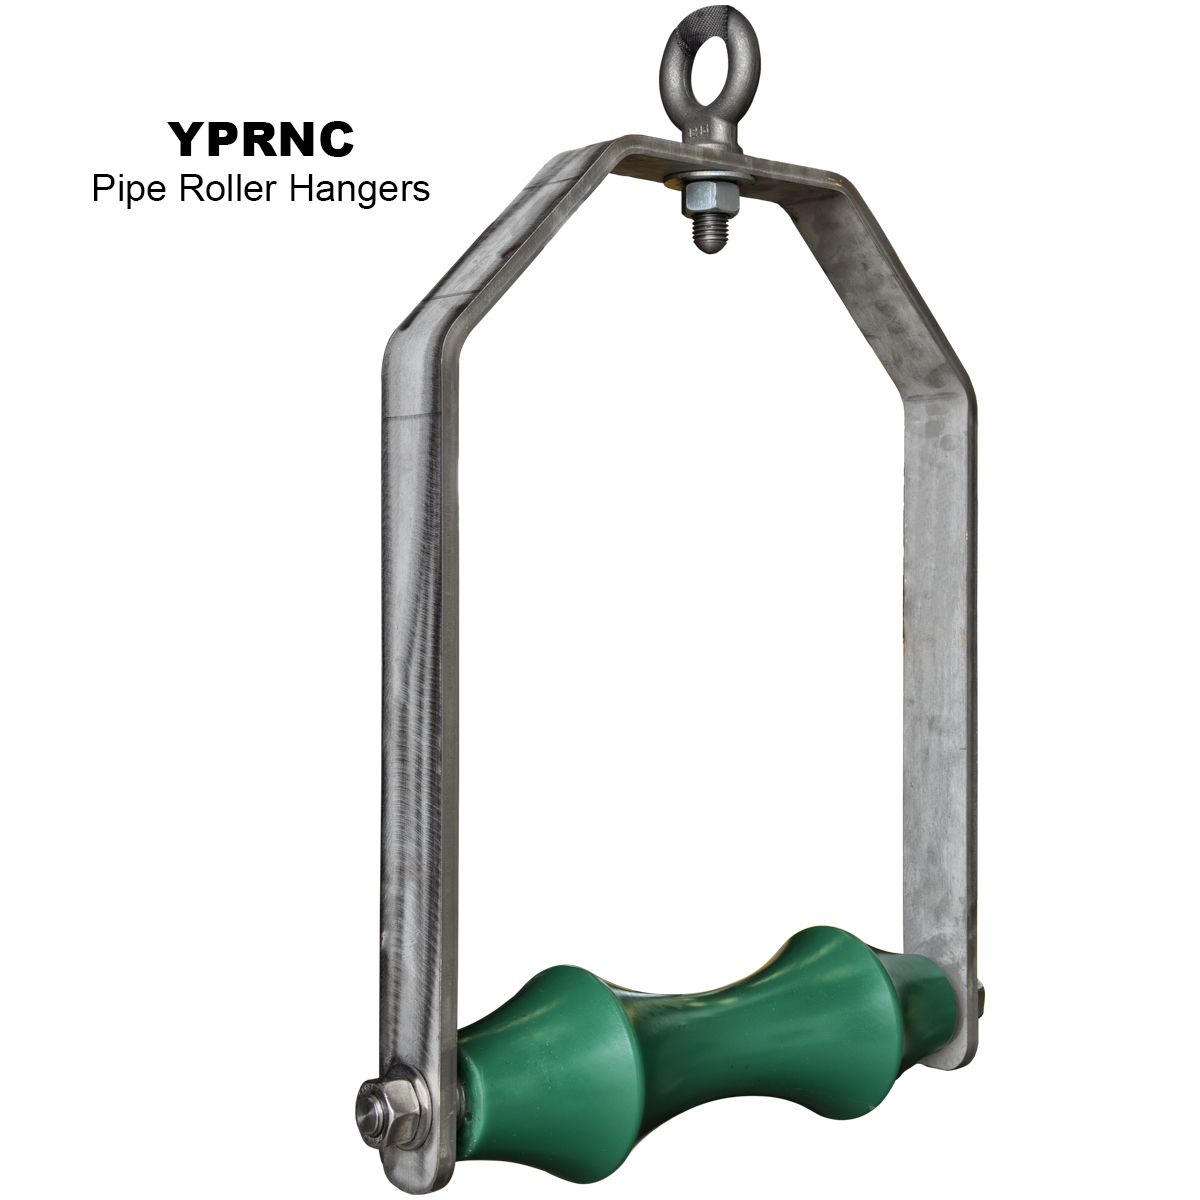 1,200 lbs pipe roller hangers